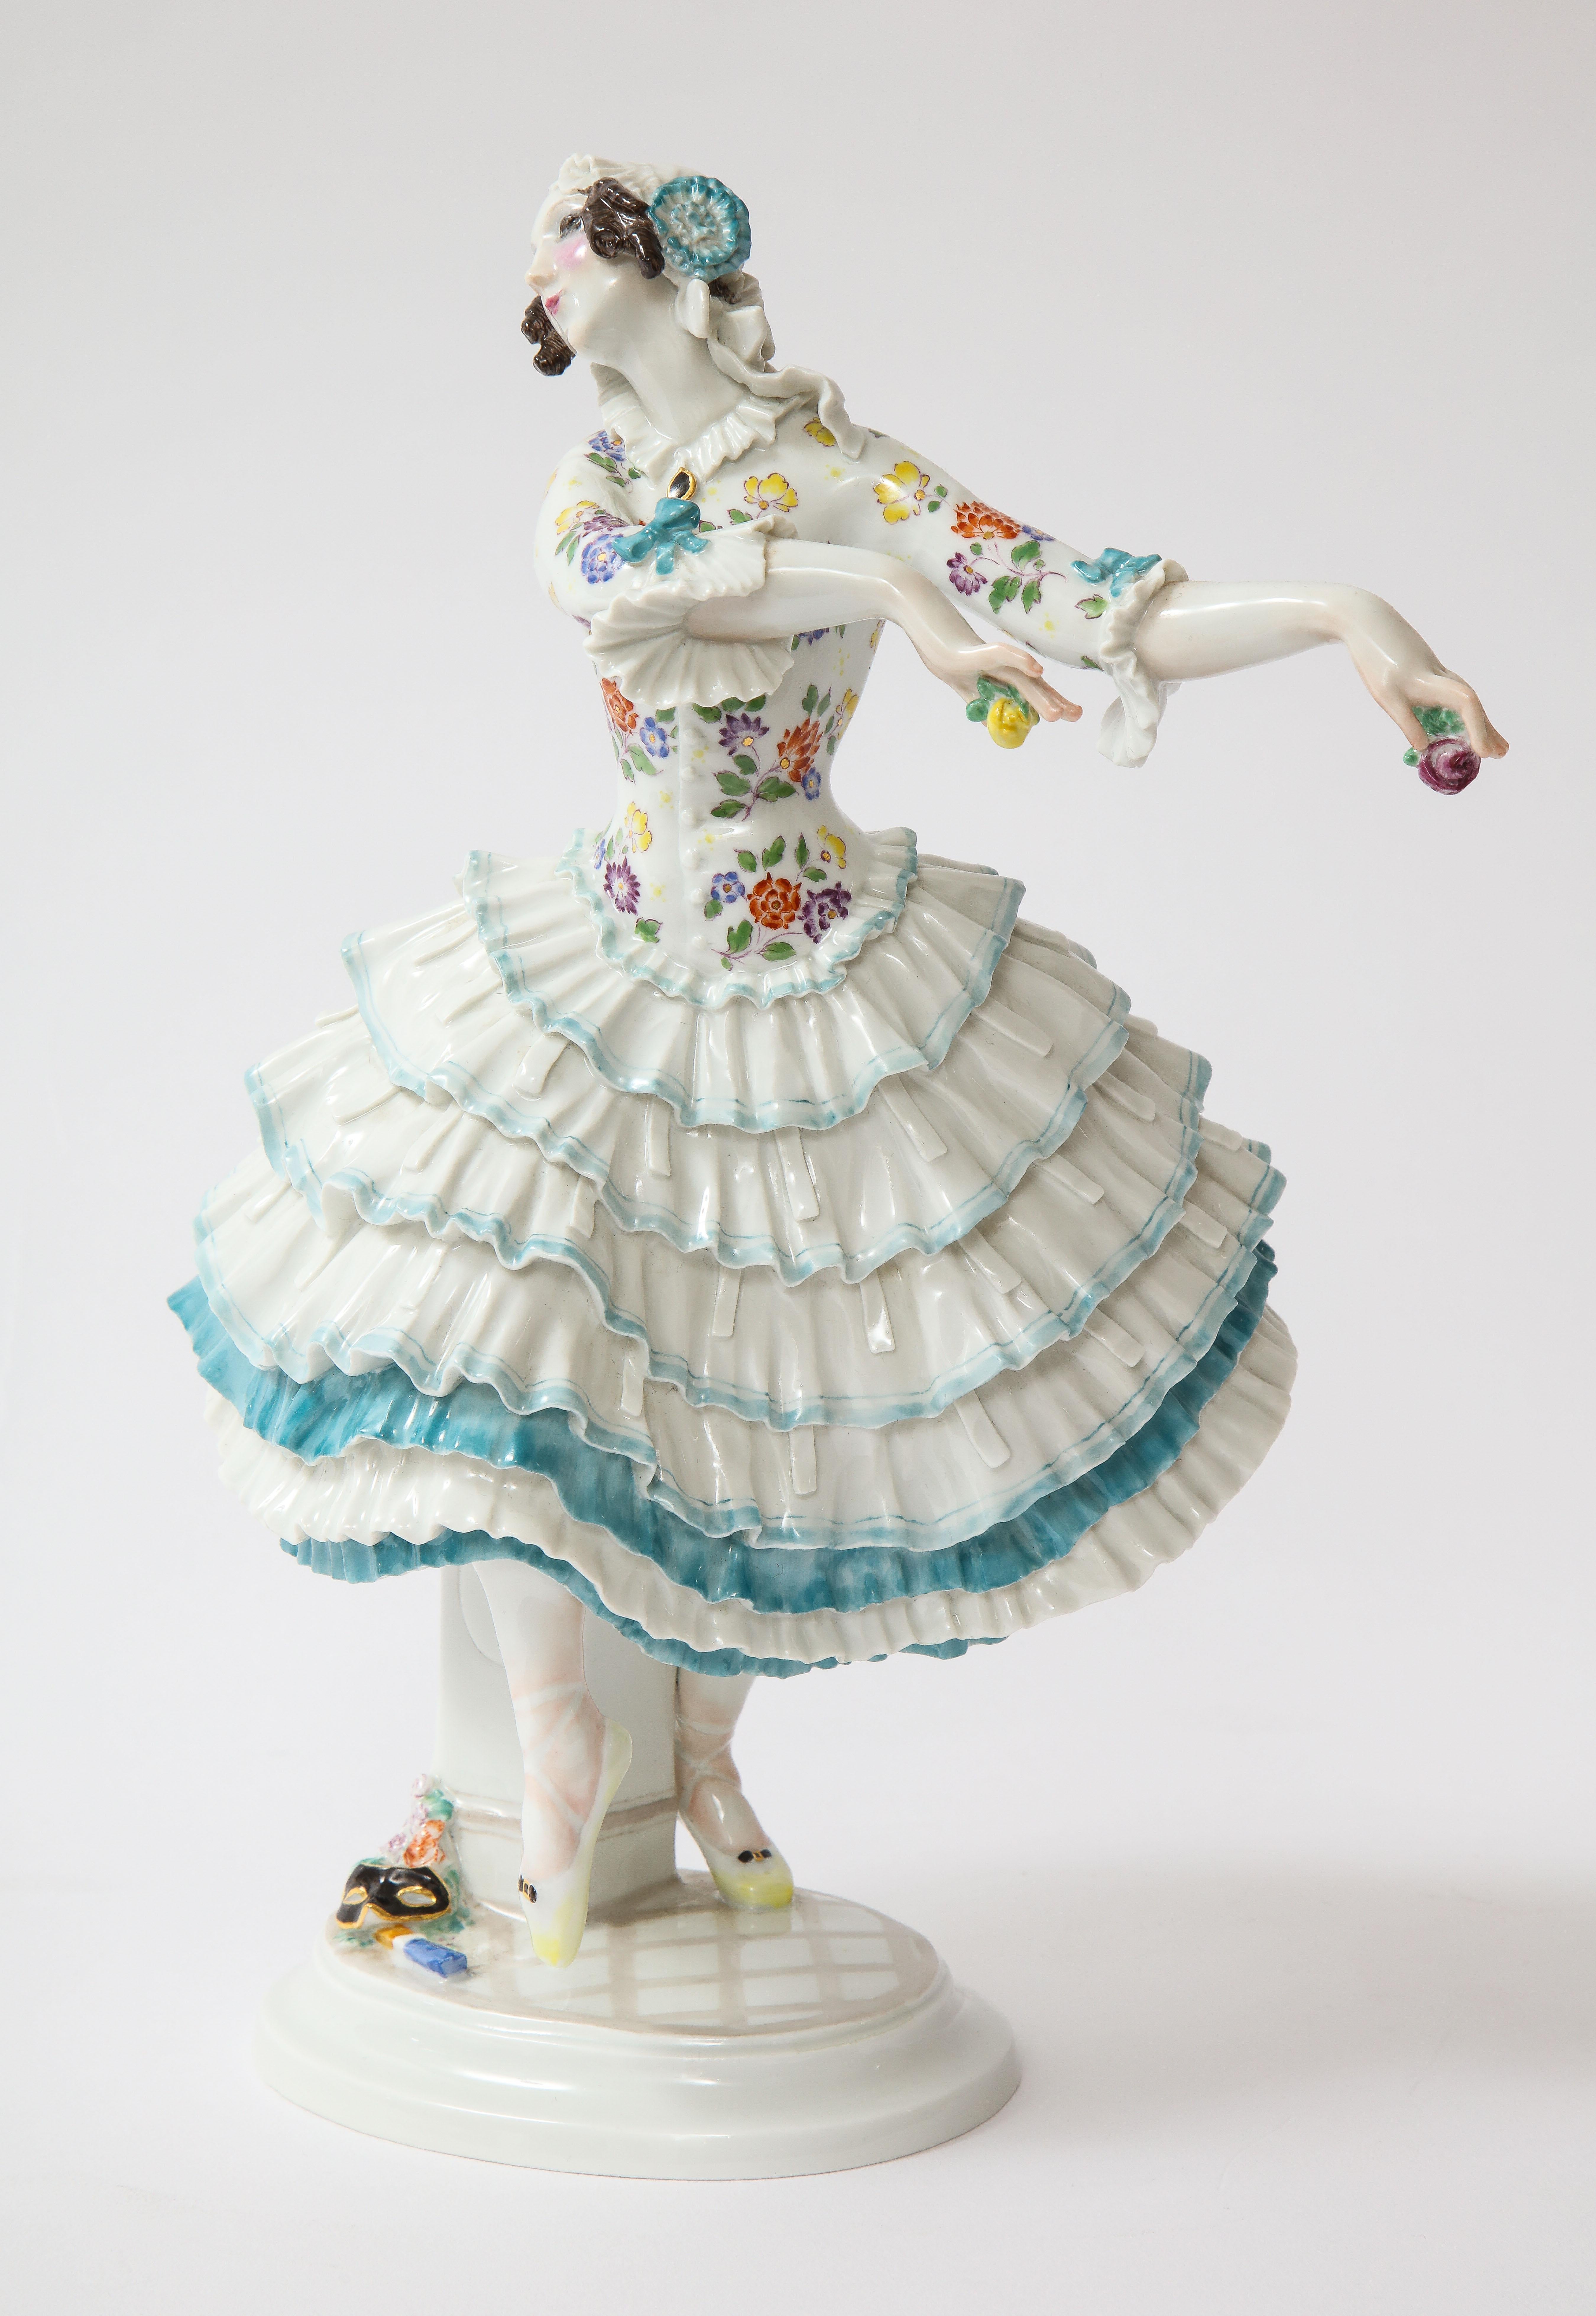 Magnifique danseuse de ballet de Meissen du 20e siècle, Chiarina, tirée des Ballets russes de Paul Scheurich.  Voici la captivante danseuse de ballet de Meissen 